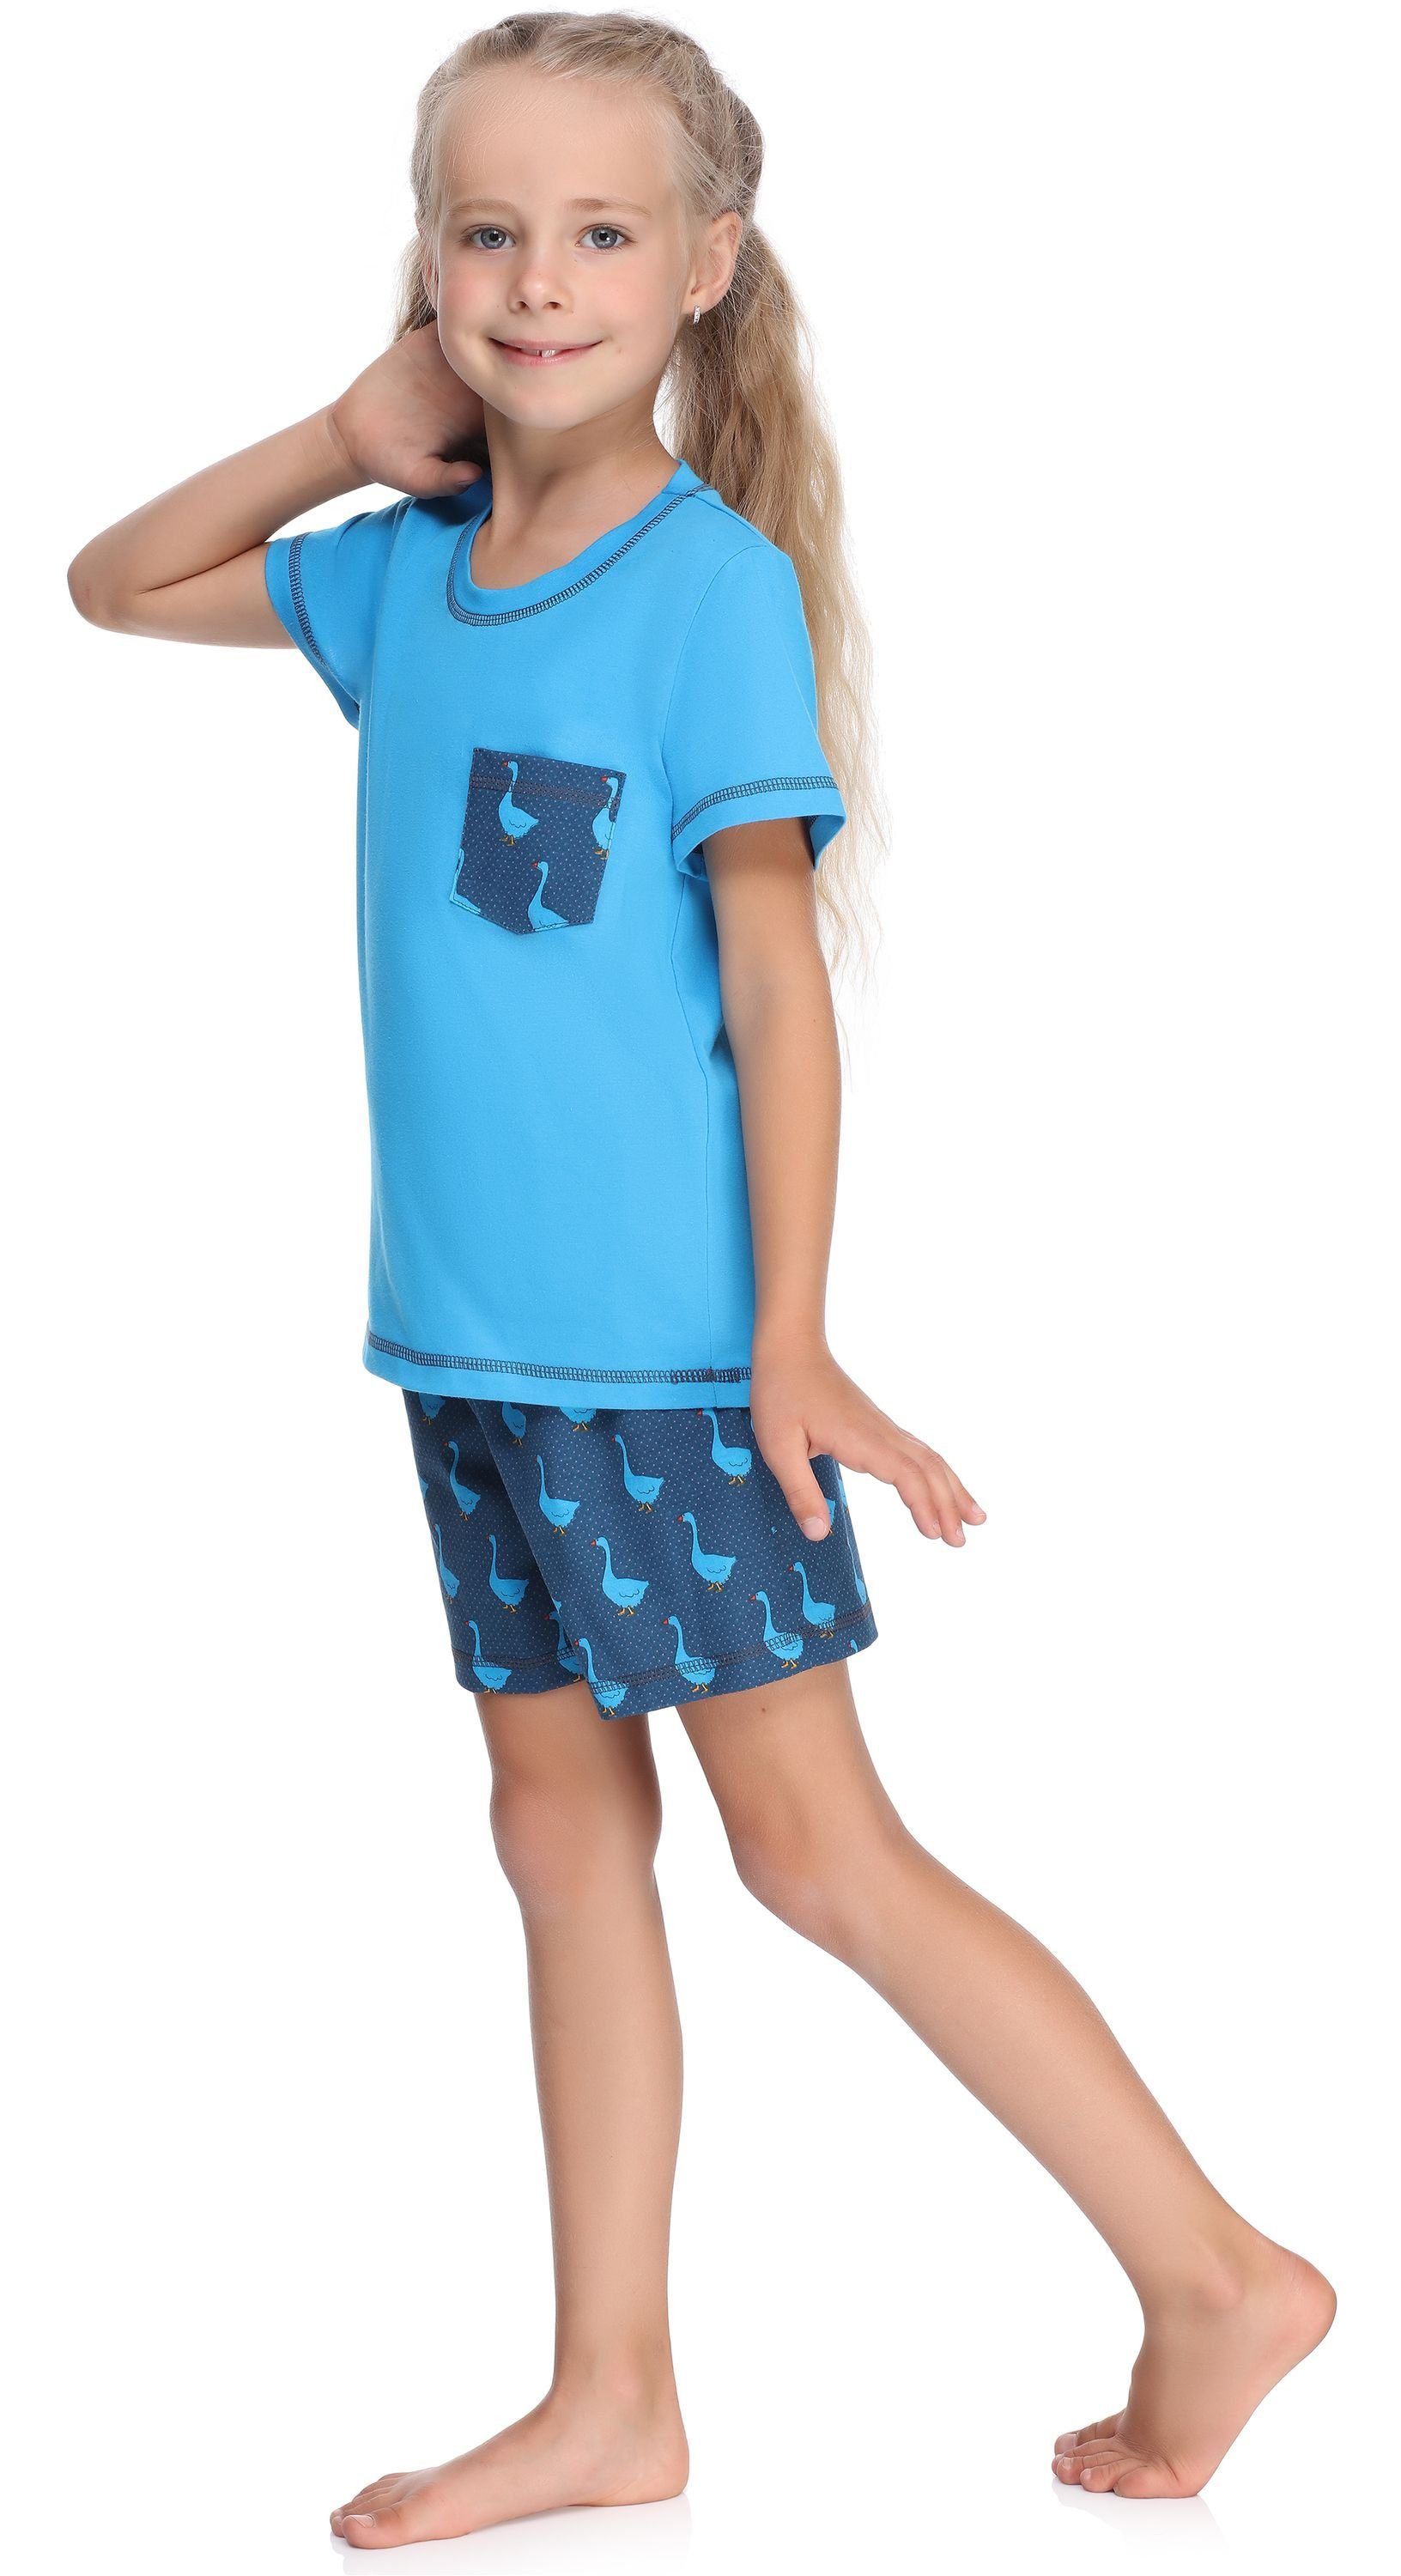 Mädchen Pyjama Set Baumwolle Schlafanzüge Style aus MS10-292 Blau/Gans Schlafanzug Merry Kurz